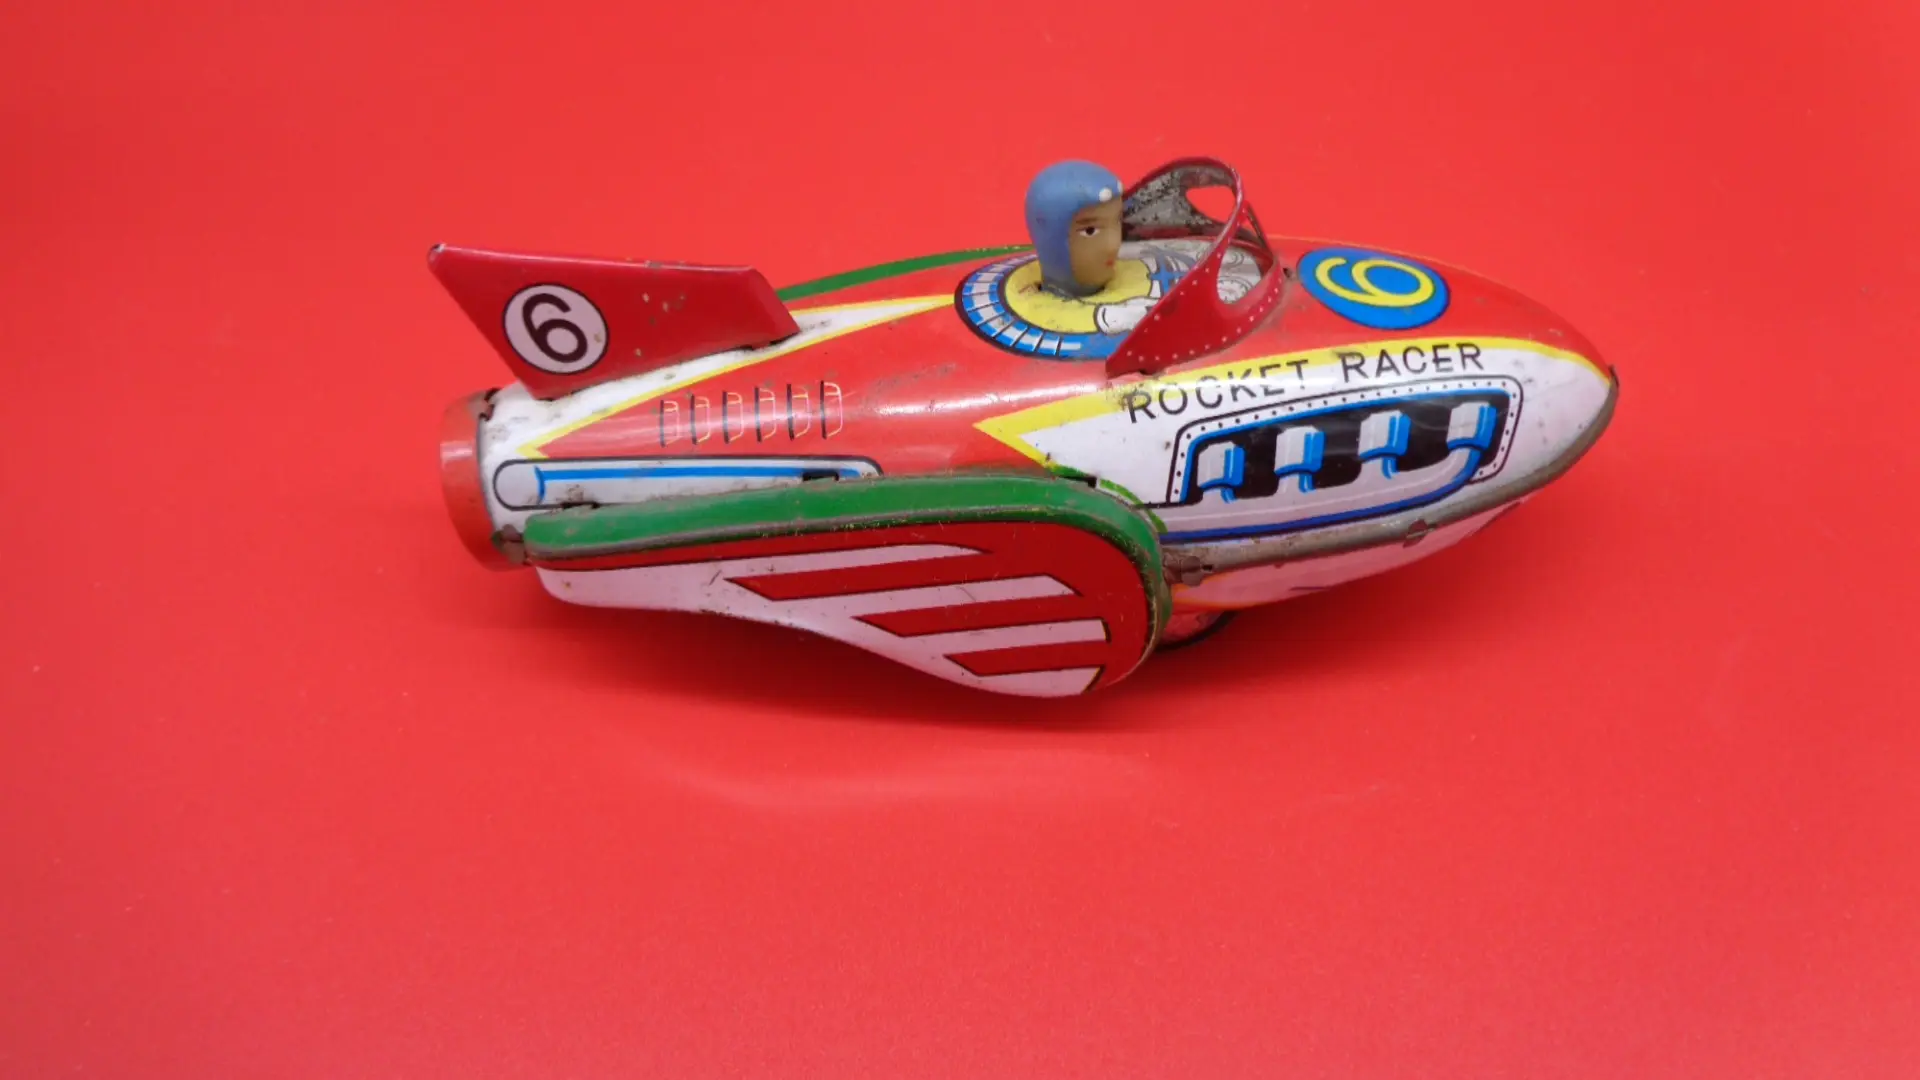 Rocket Racer vintage toy